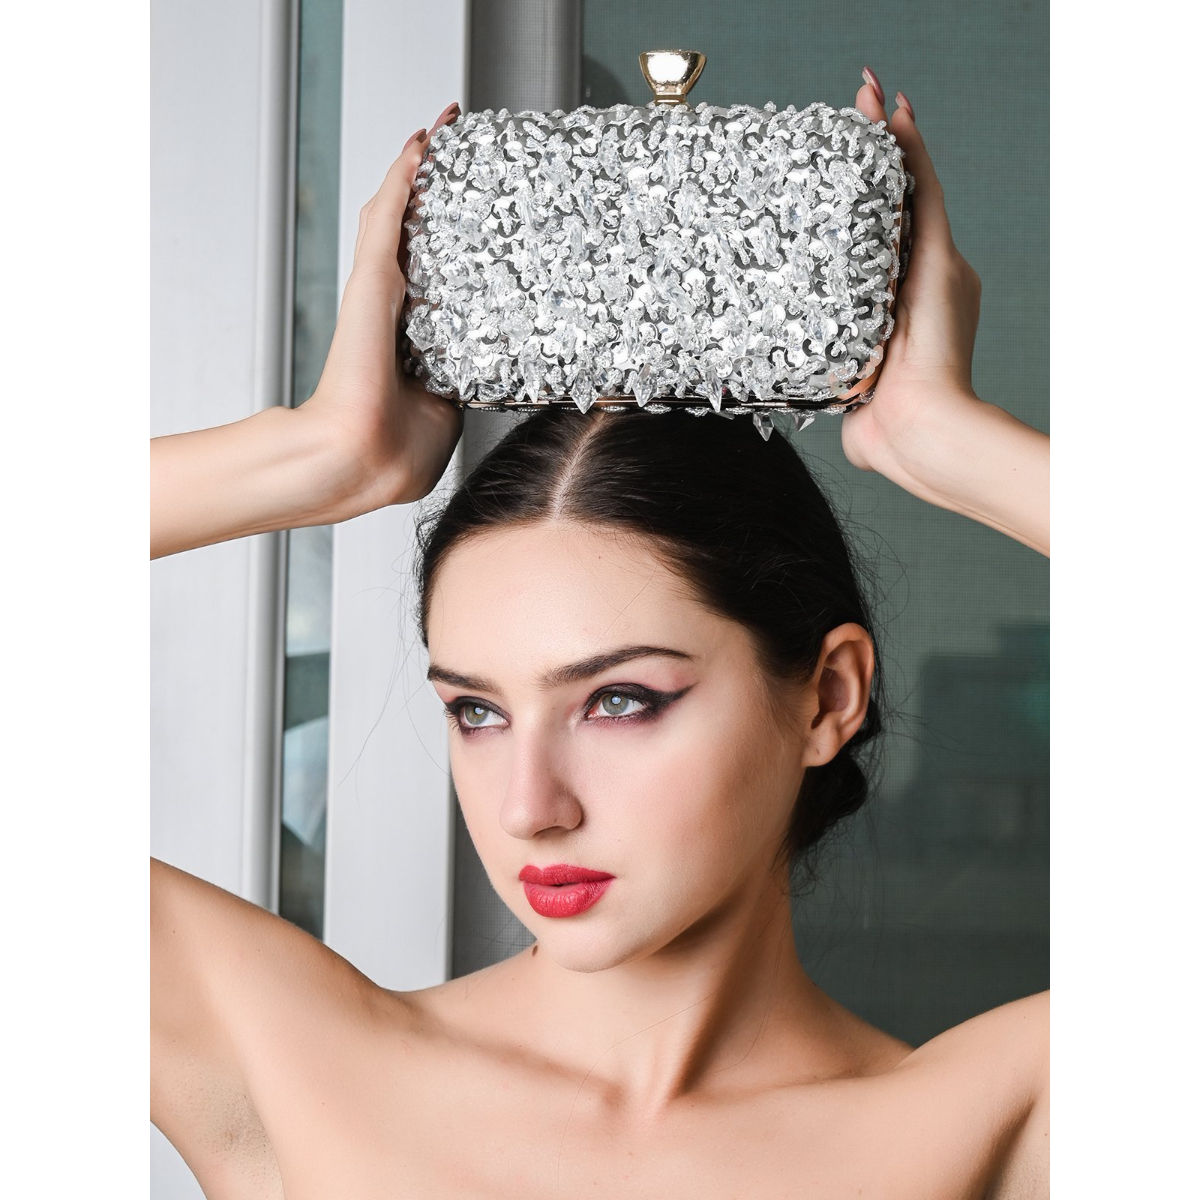 Clutch Bag Luxury Wedding | Wedding Clutch Bag Pearls | Clutch Purse Wedding  - Silver - Aliexpress